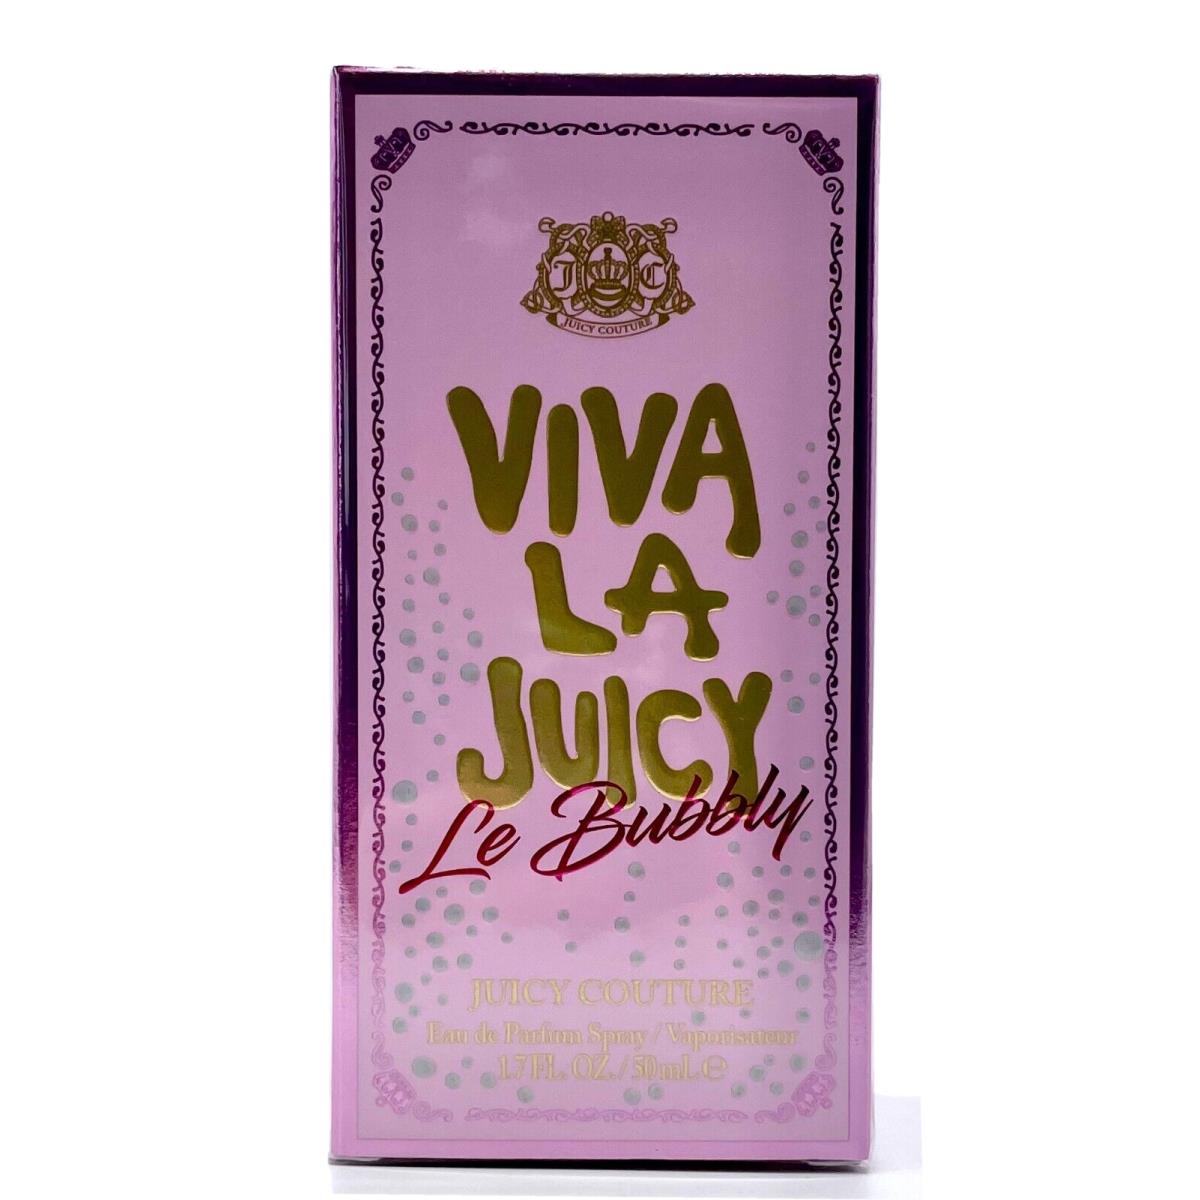 Juicy Couture Viva La Juicy Le Bubbly For Women 1.7 oz Edp Spray